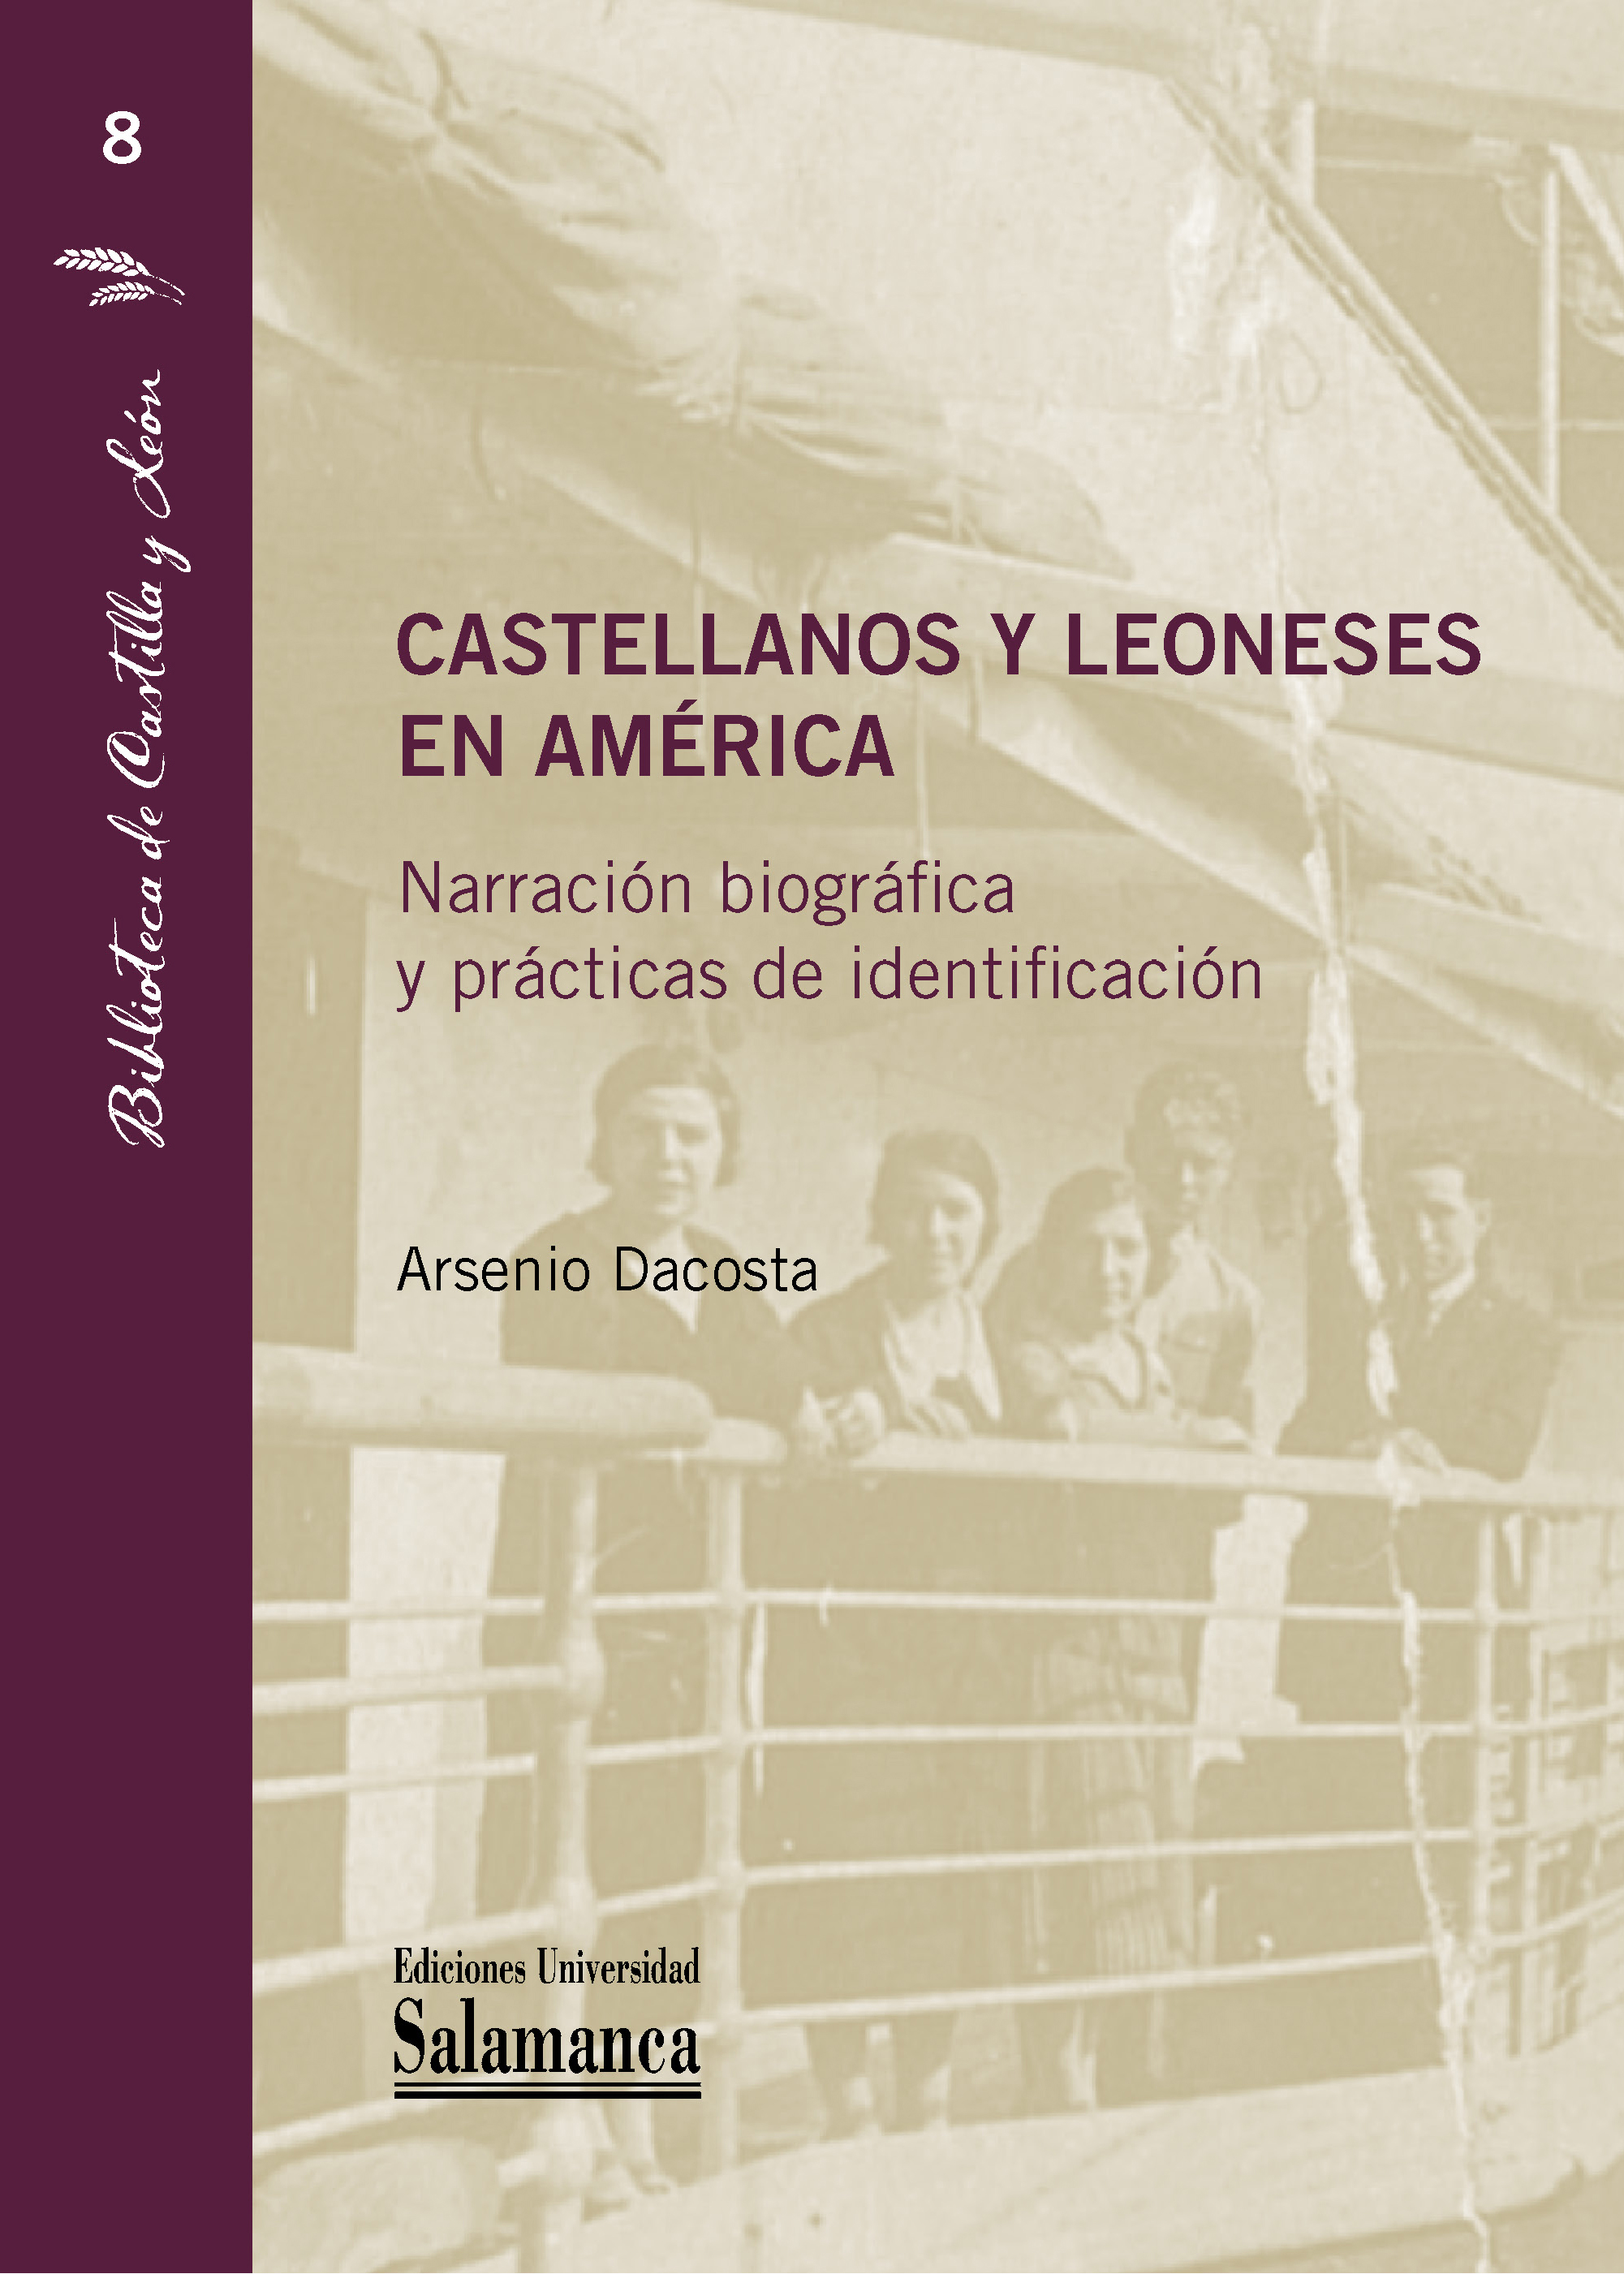 Castellanos y leoneses en América: Narración biográfica y prácticas de identificación